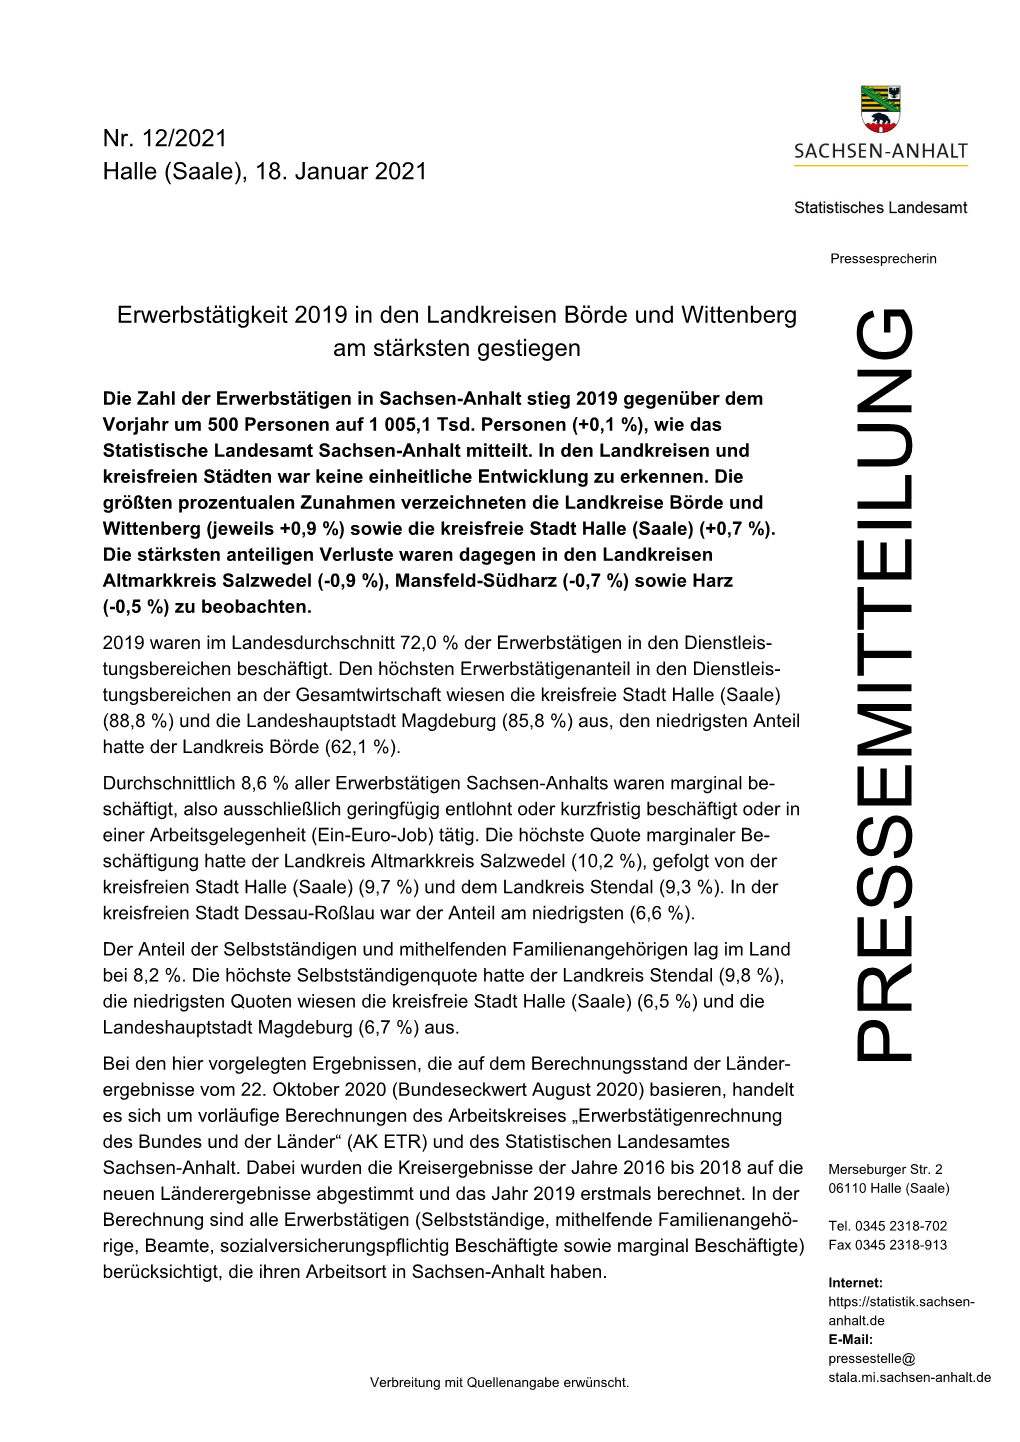 Pressemitteilung Vom 18.01.21, Erwerbstätigkeit 2019 in Den Landkreisen Börde Und Wittenberg Am Stärksten Gestiegen